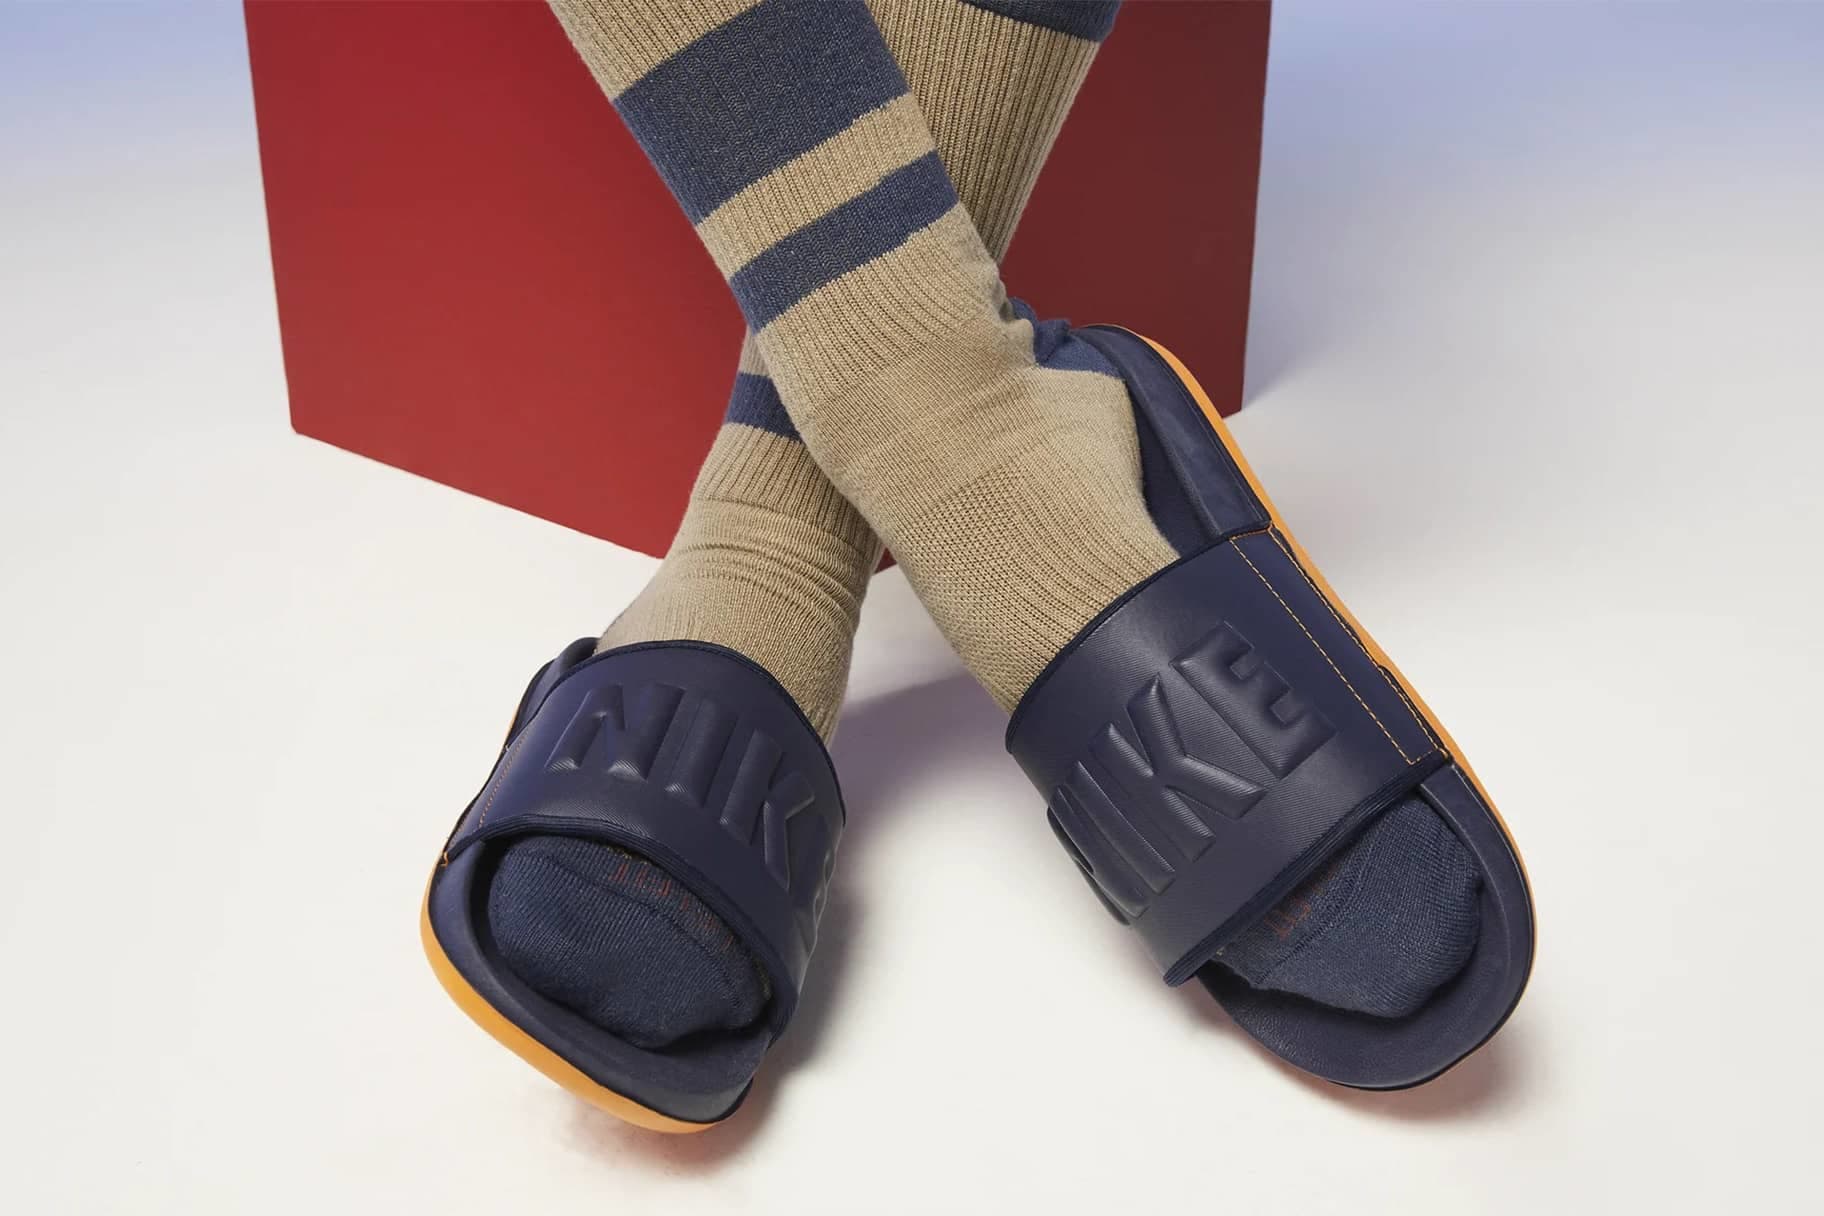 Las zapatillas Nike más cómodas para andar por